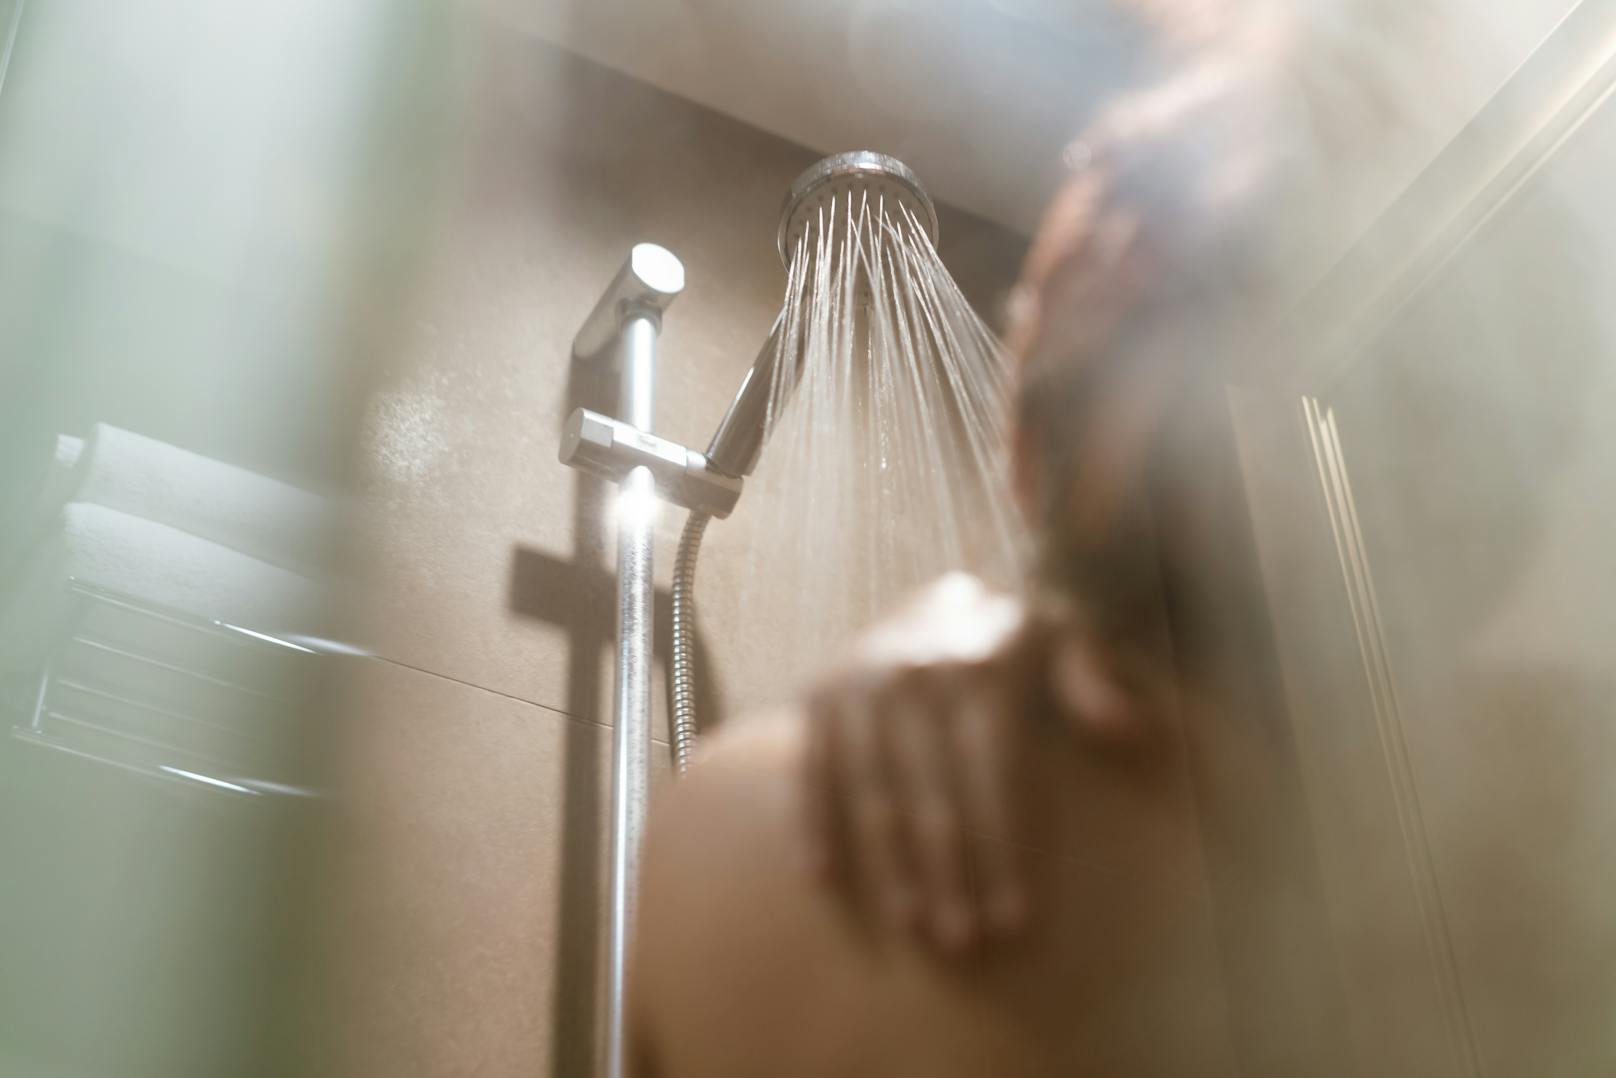 Während des Duschens war die Welt für einen 34-jährigen Mann aus den USA noch in Ordnung.